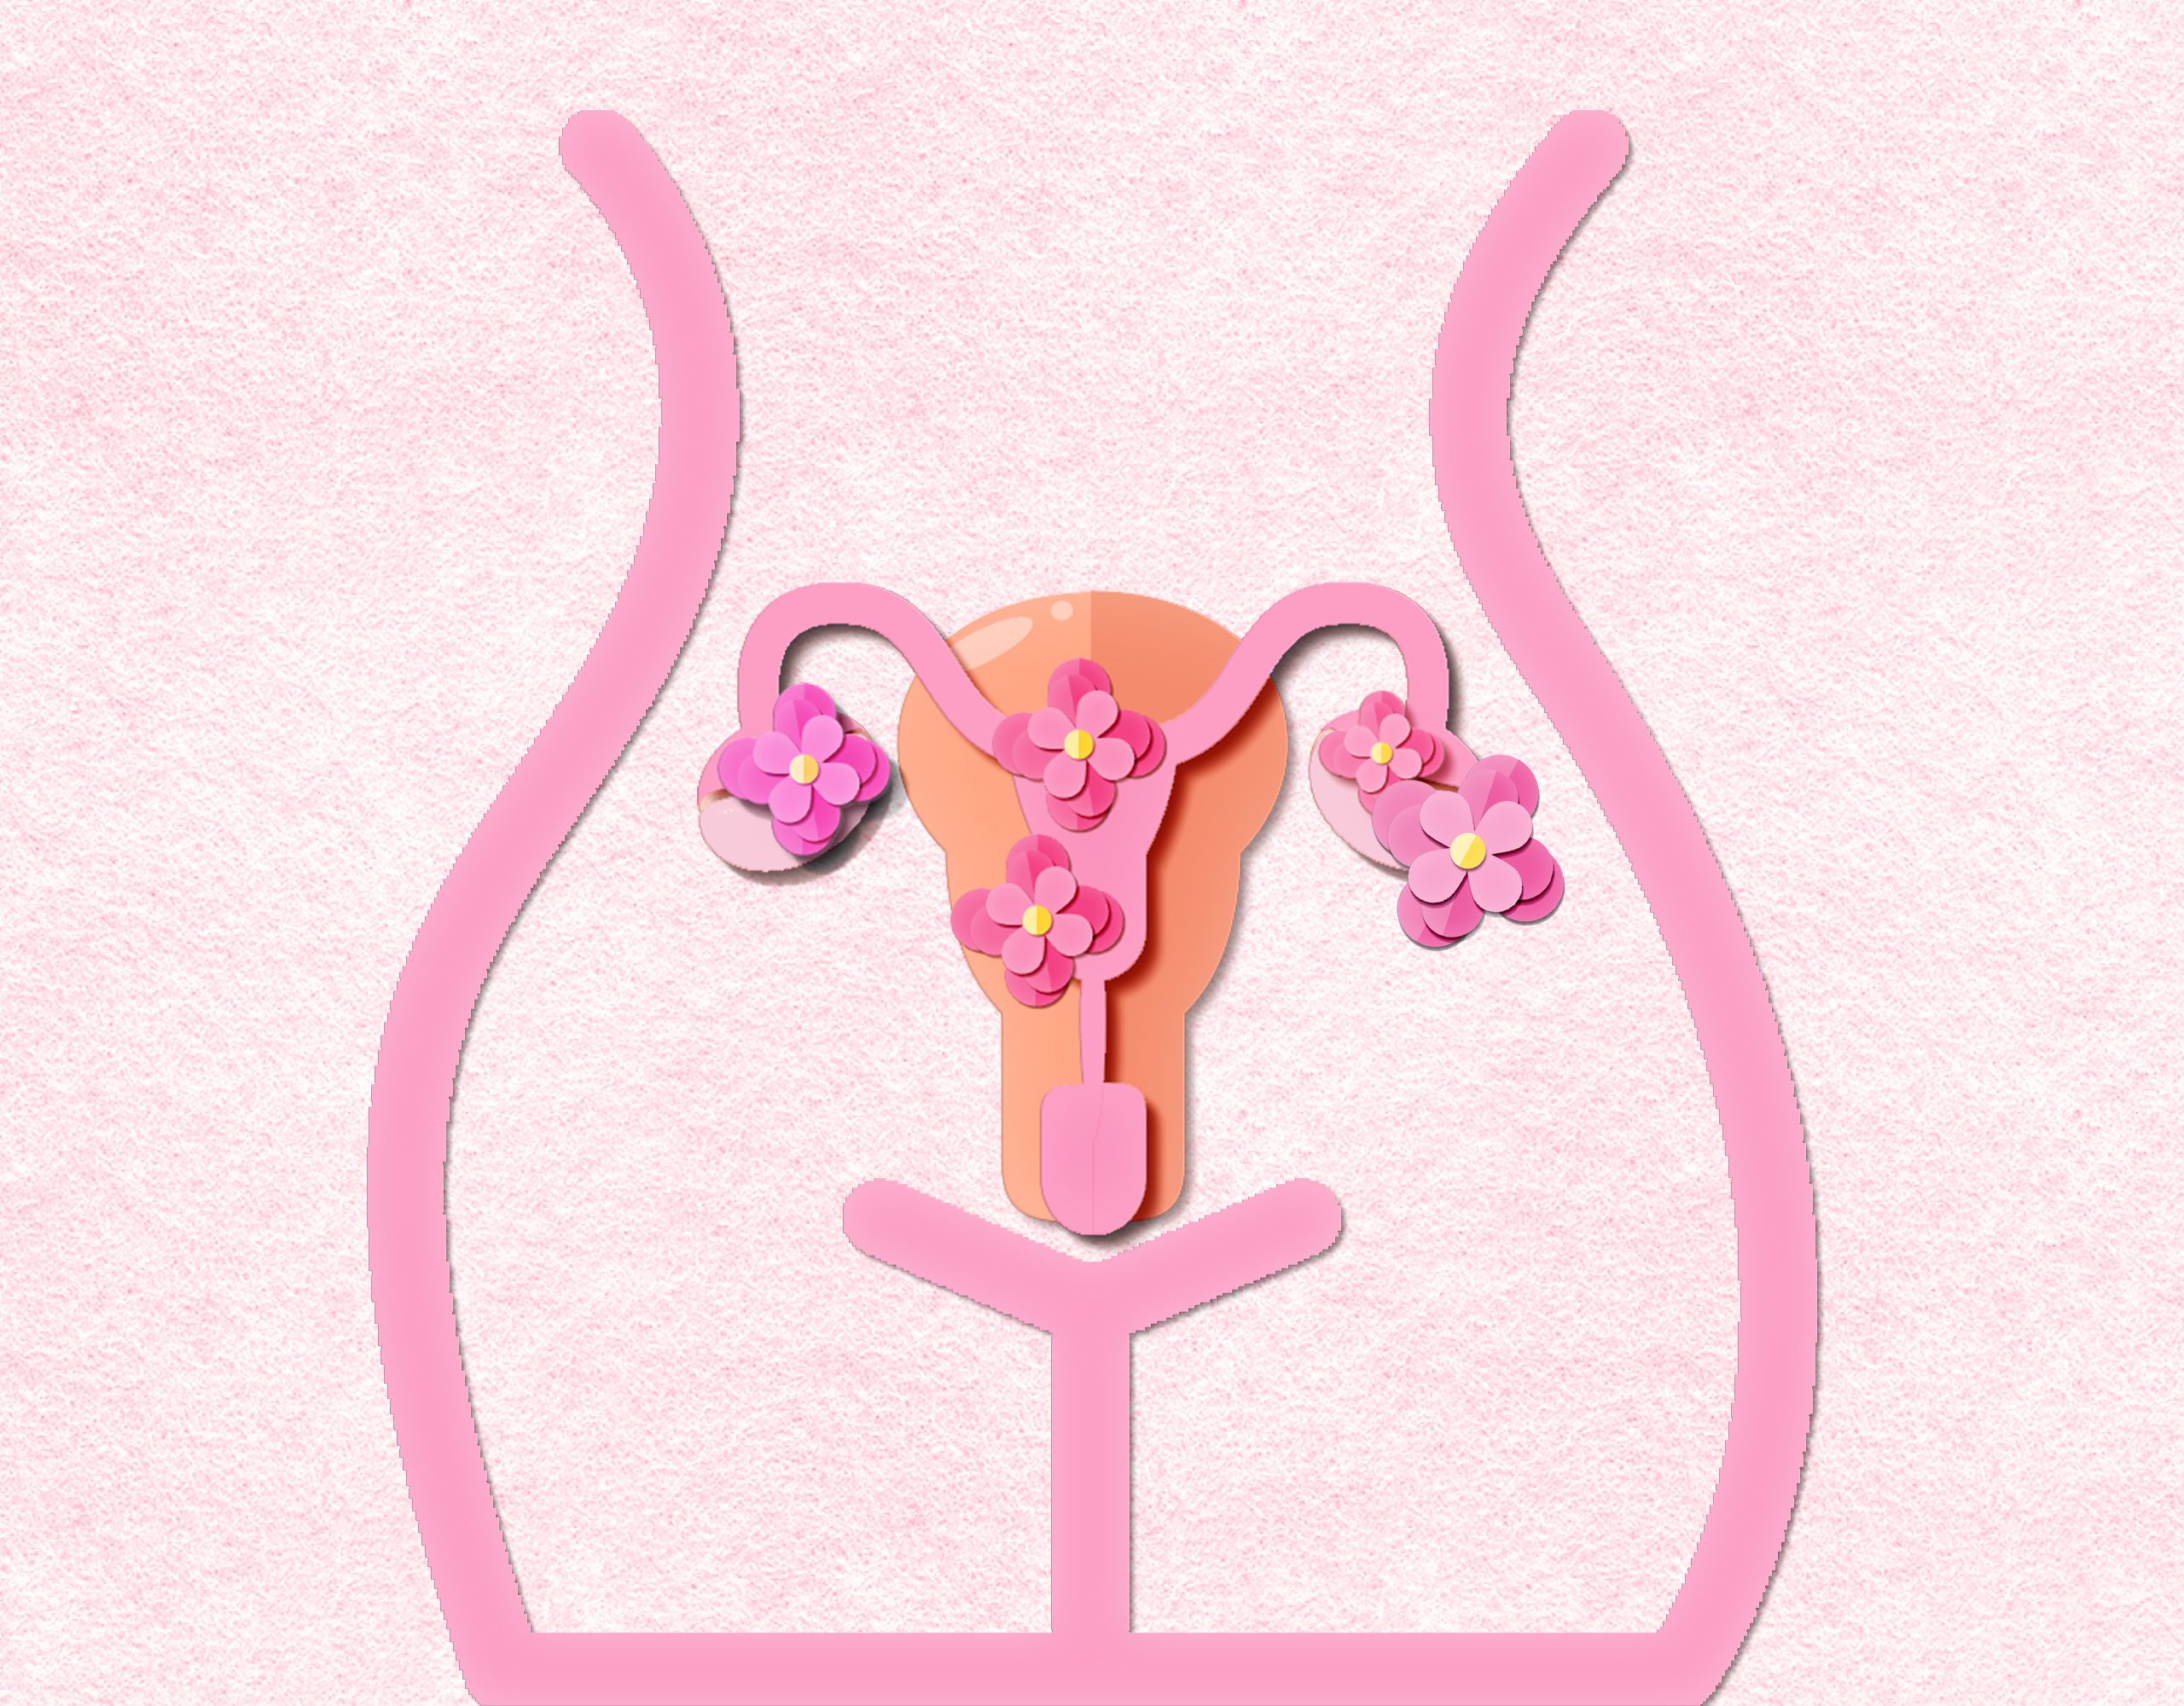 妊娠率がグッと変わる 膣内 子宮内フローラを改善して健康に